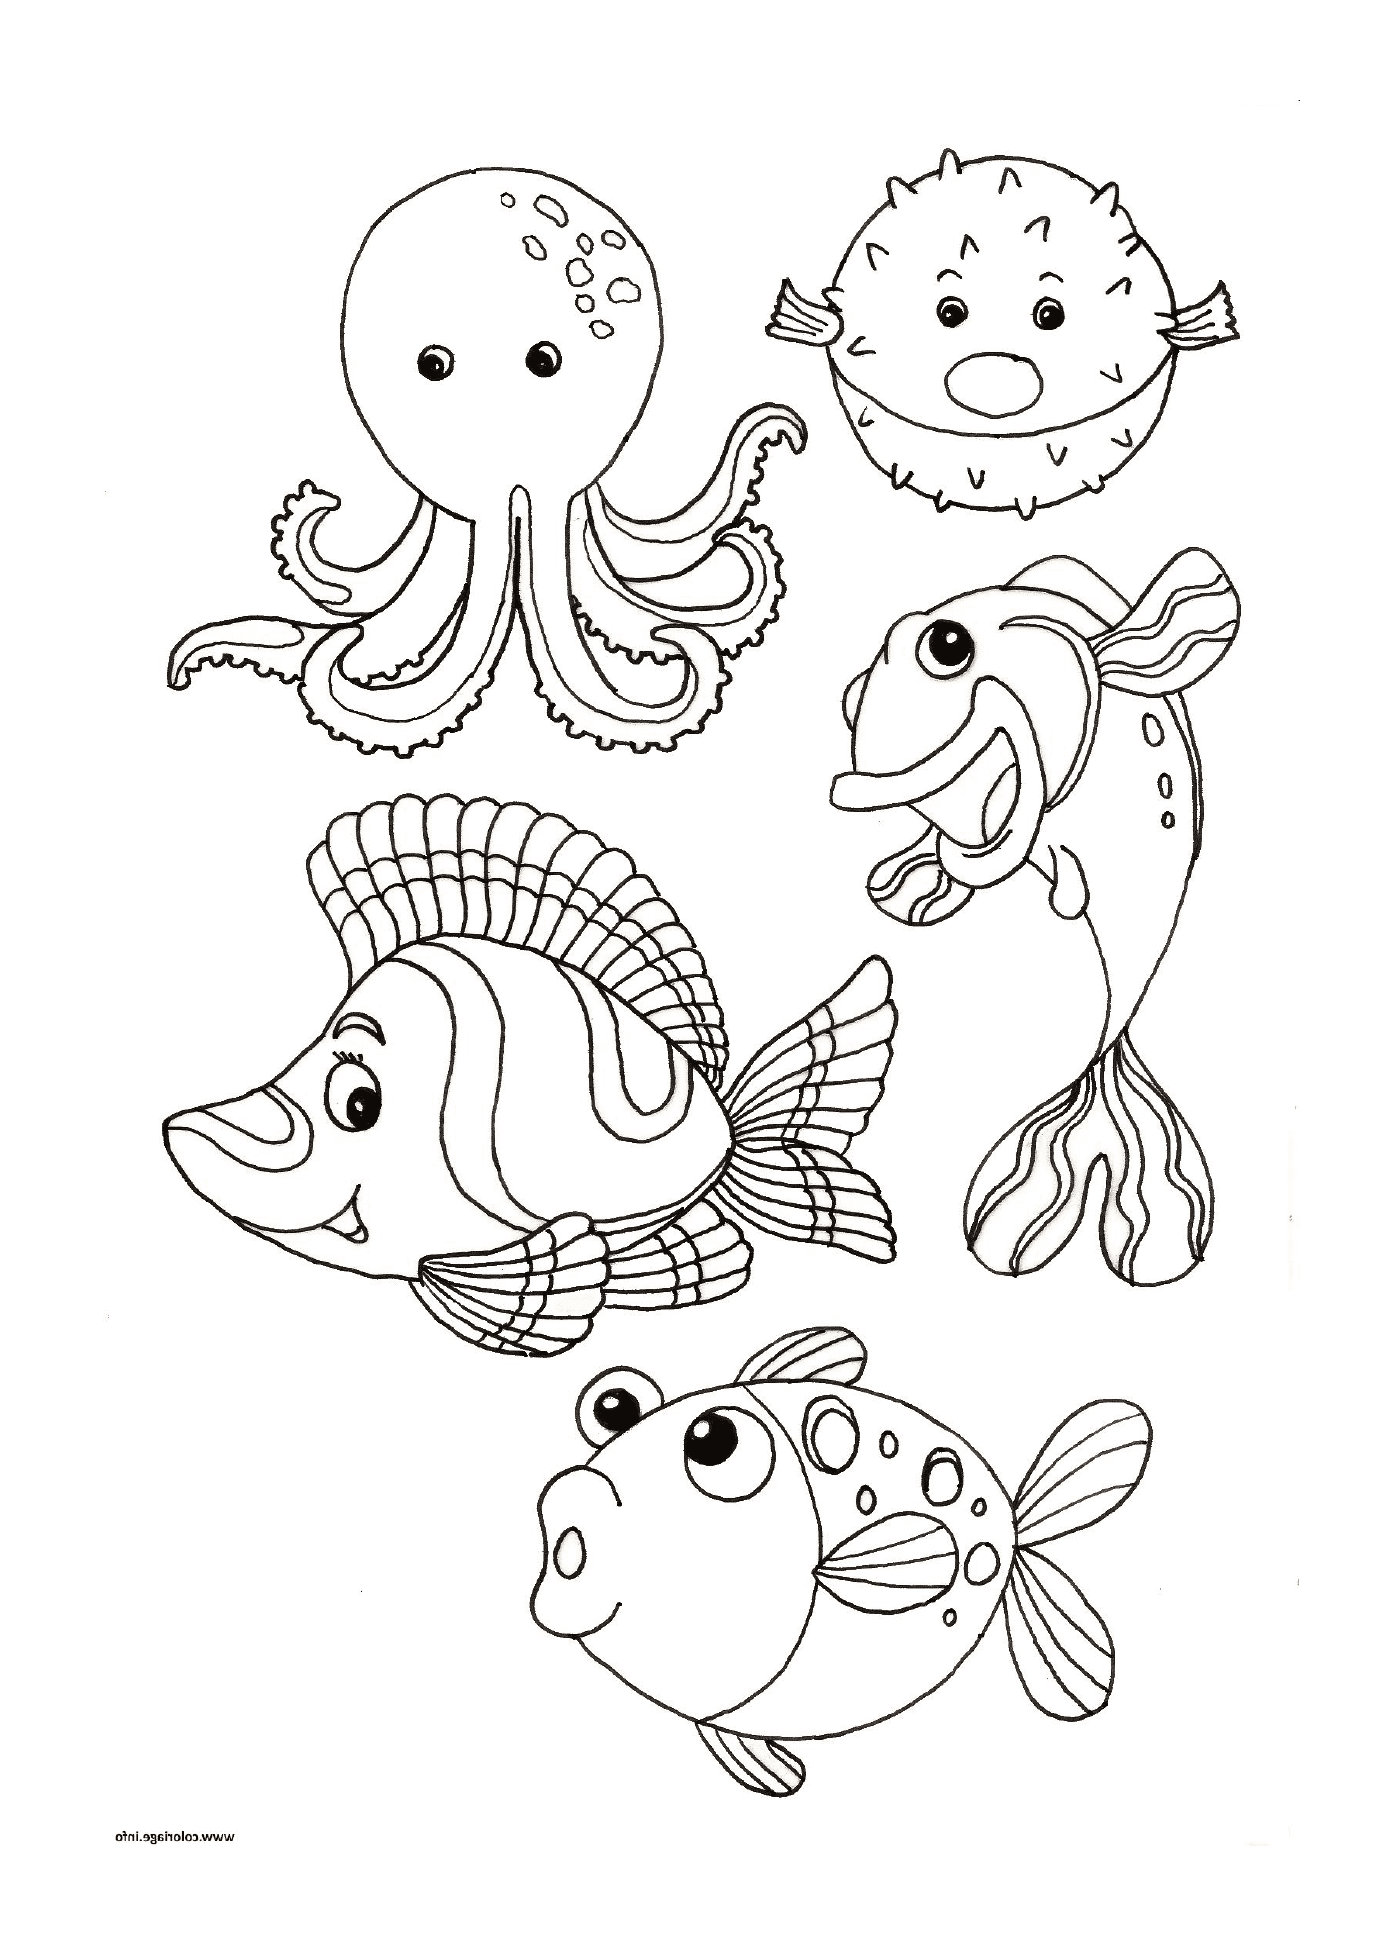  un gruppo di animali marini uno accanto all'altro 